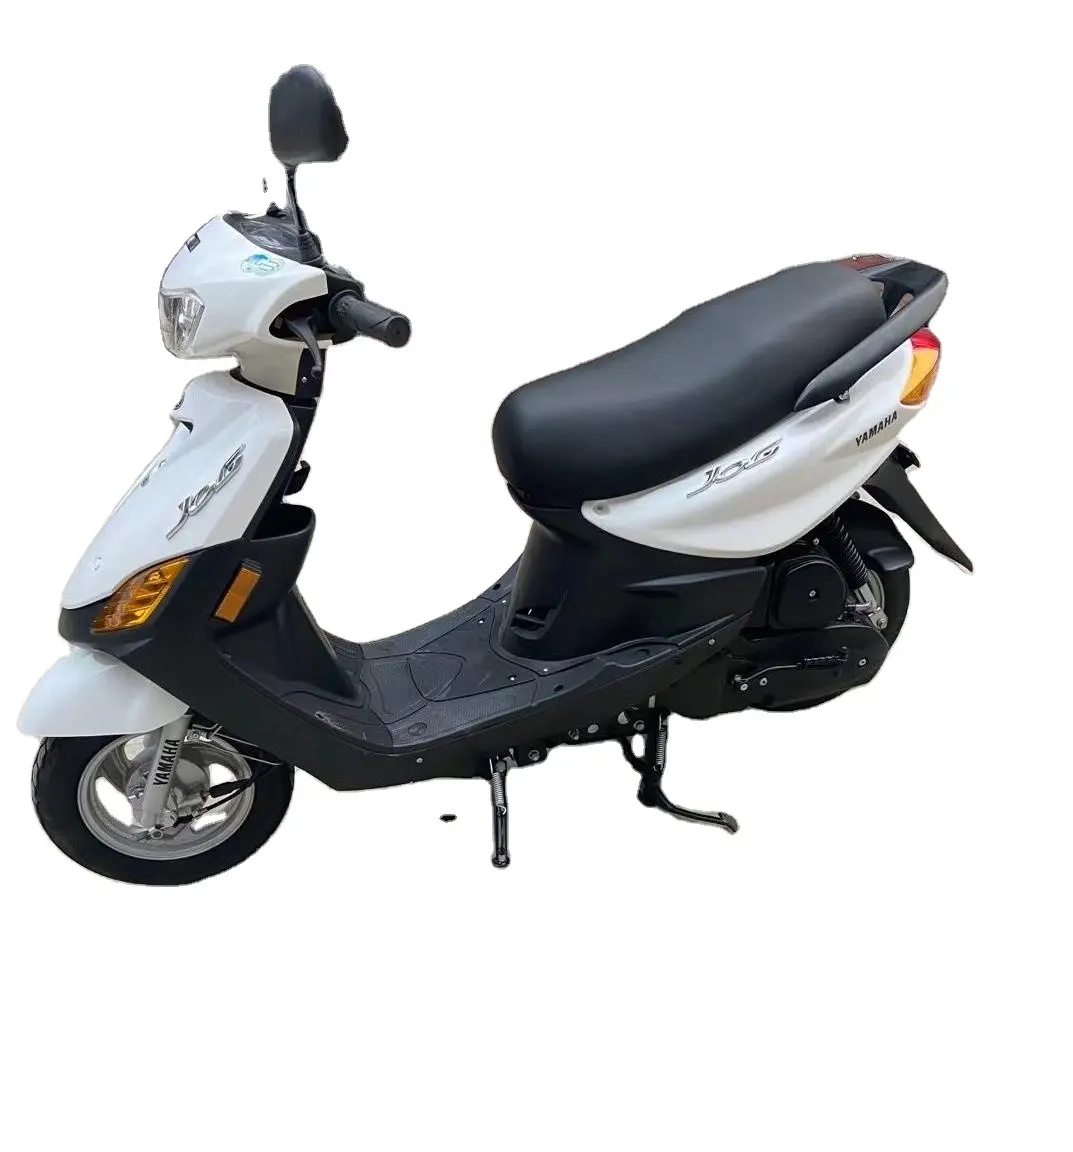 Qiaoge100cc высокого качества Подержанный гоночный мопед Стандартный двухколесный бензиновый мотоцикл белый